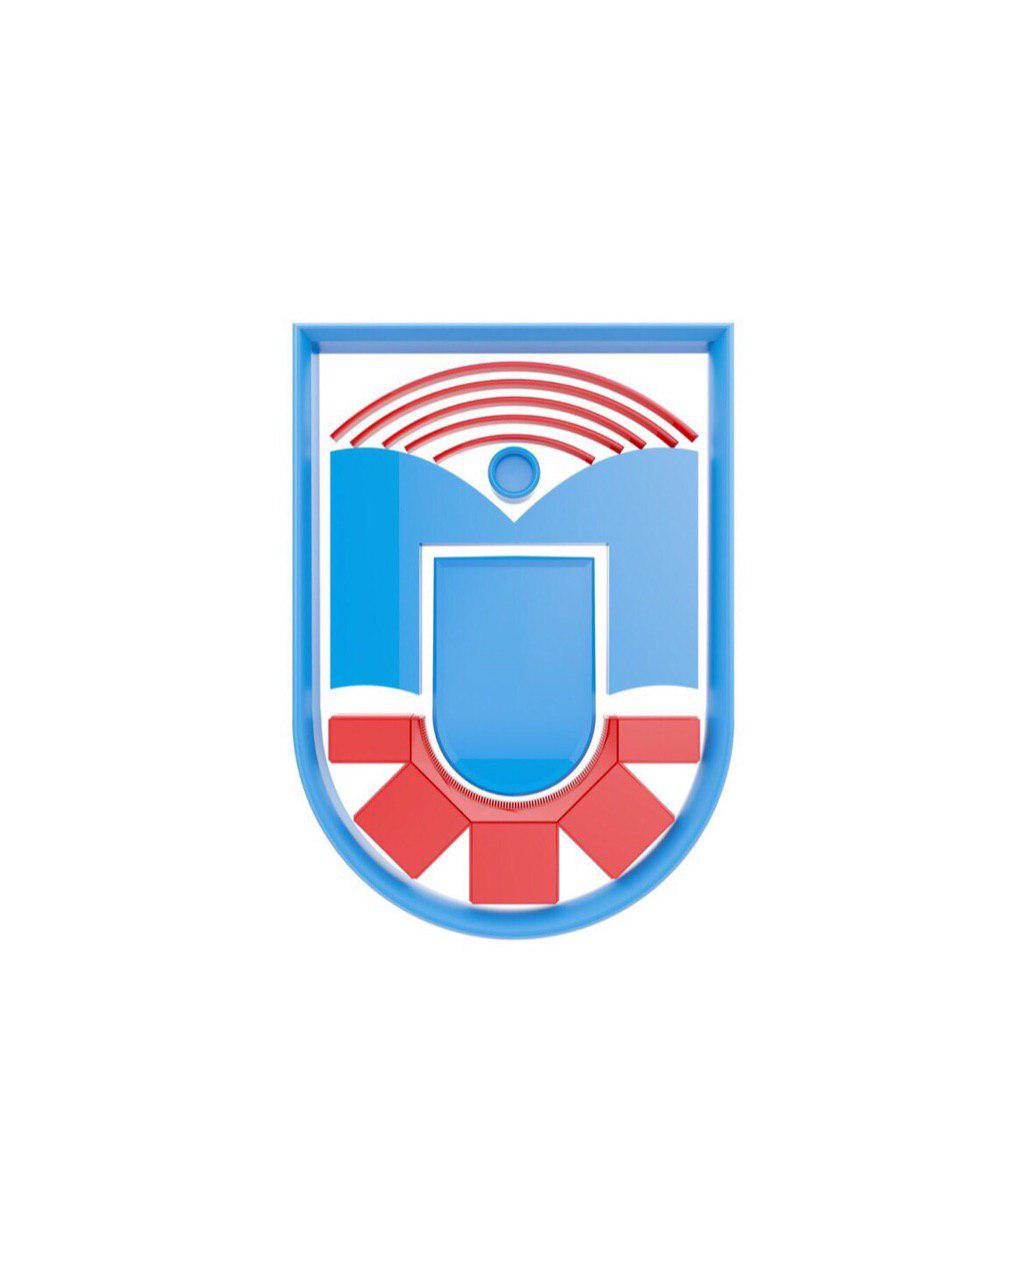 Муромский колледж радиоэлектронного приборостроения получил статус центра компетенций РЕД СОФТ